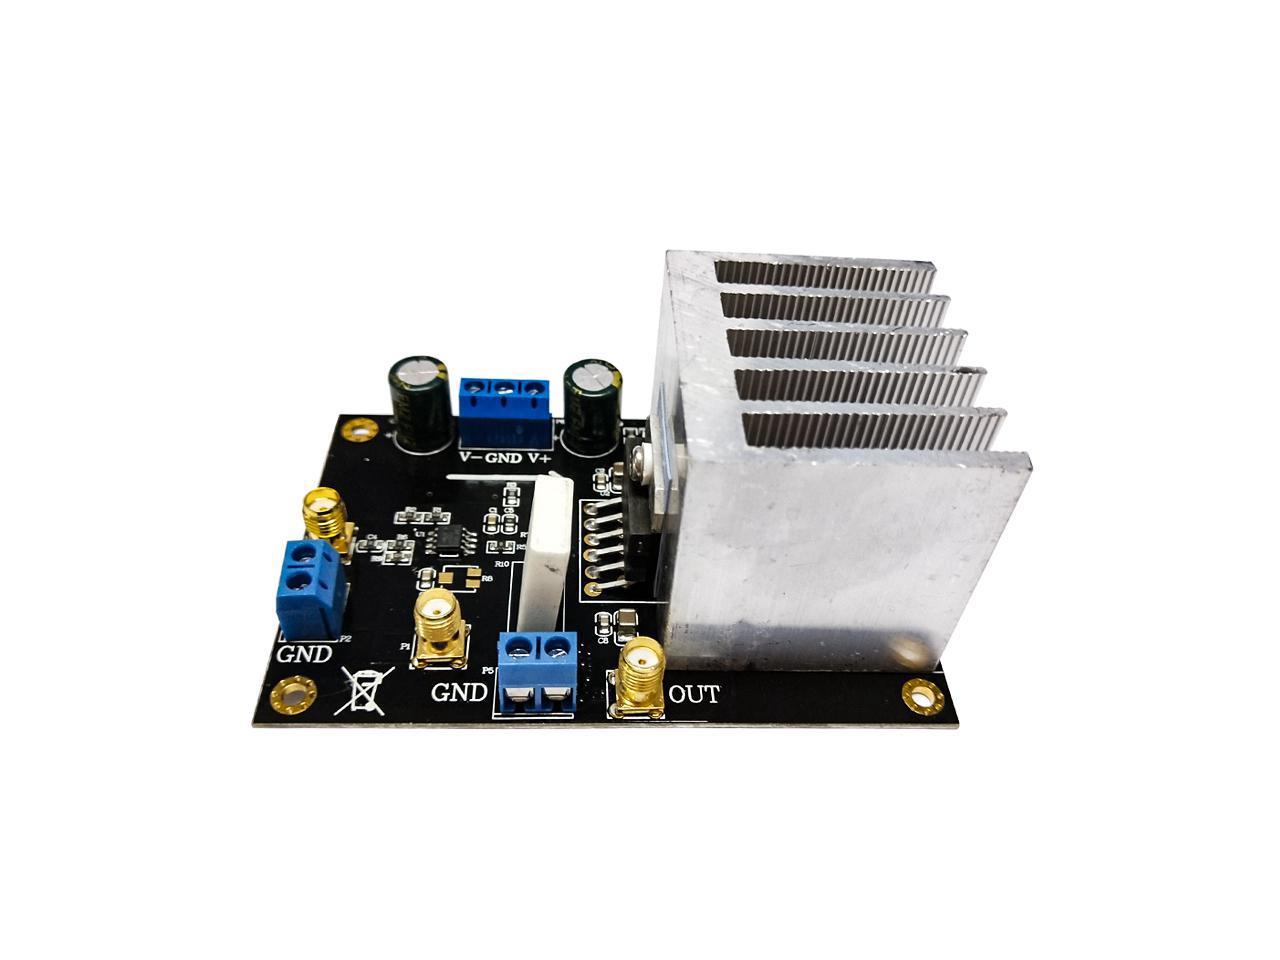 Stk401 Audio Amplifier Board Hifi 2.0 Channel 140W2 Power Amplifier Board Ac24-2 